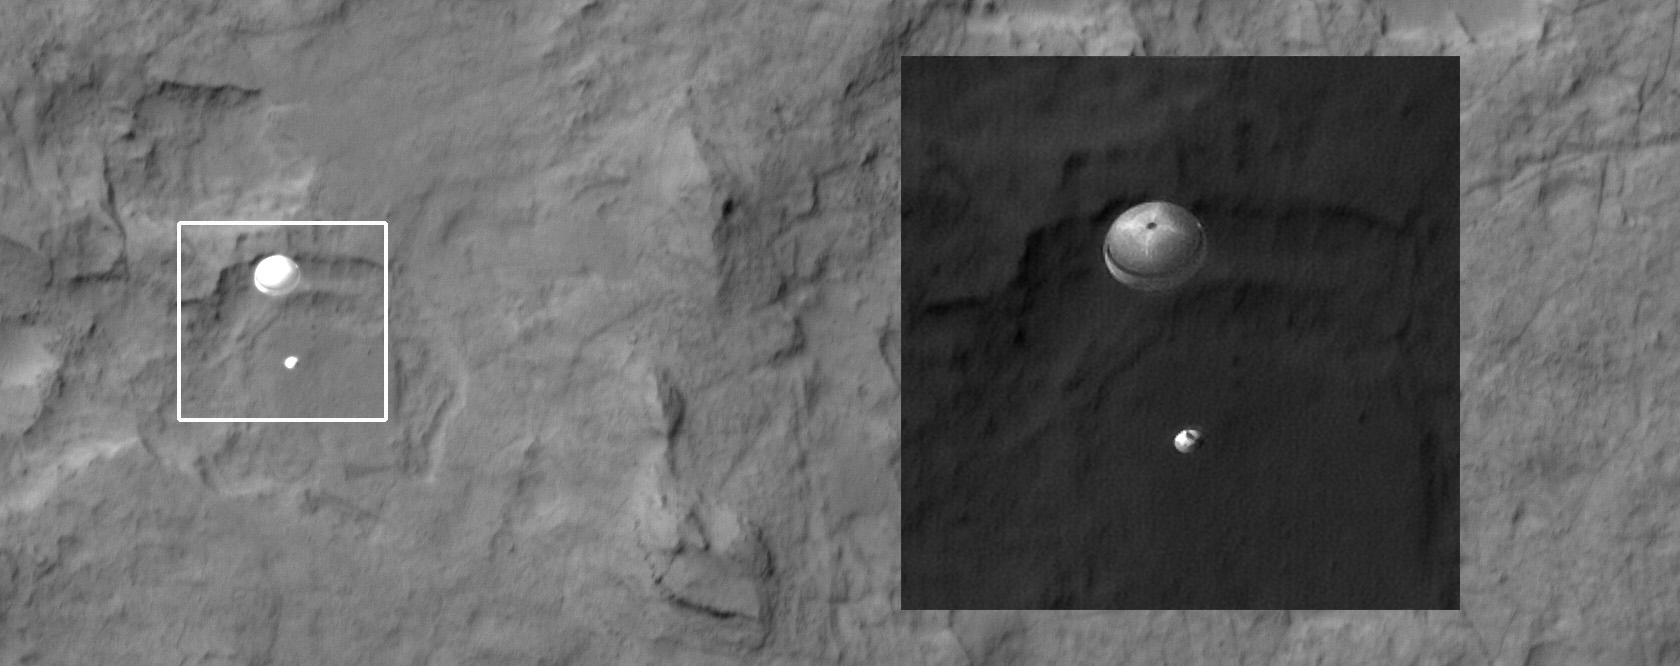 Η Κάθοδος του MSL(Curiosity) στον Άρη, φωτογραφίζεται από το HiRISE